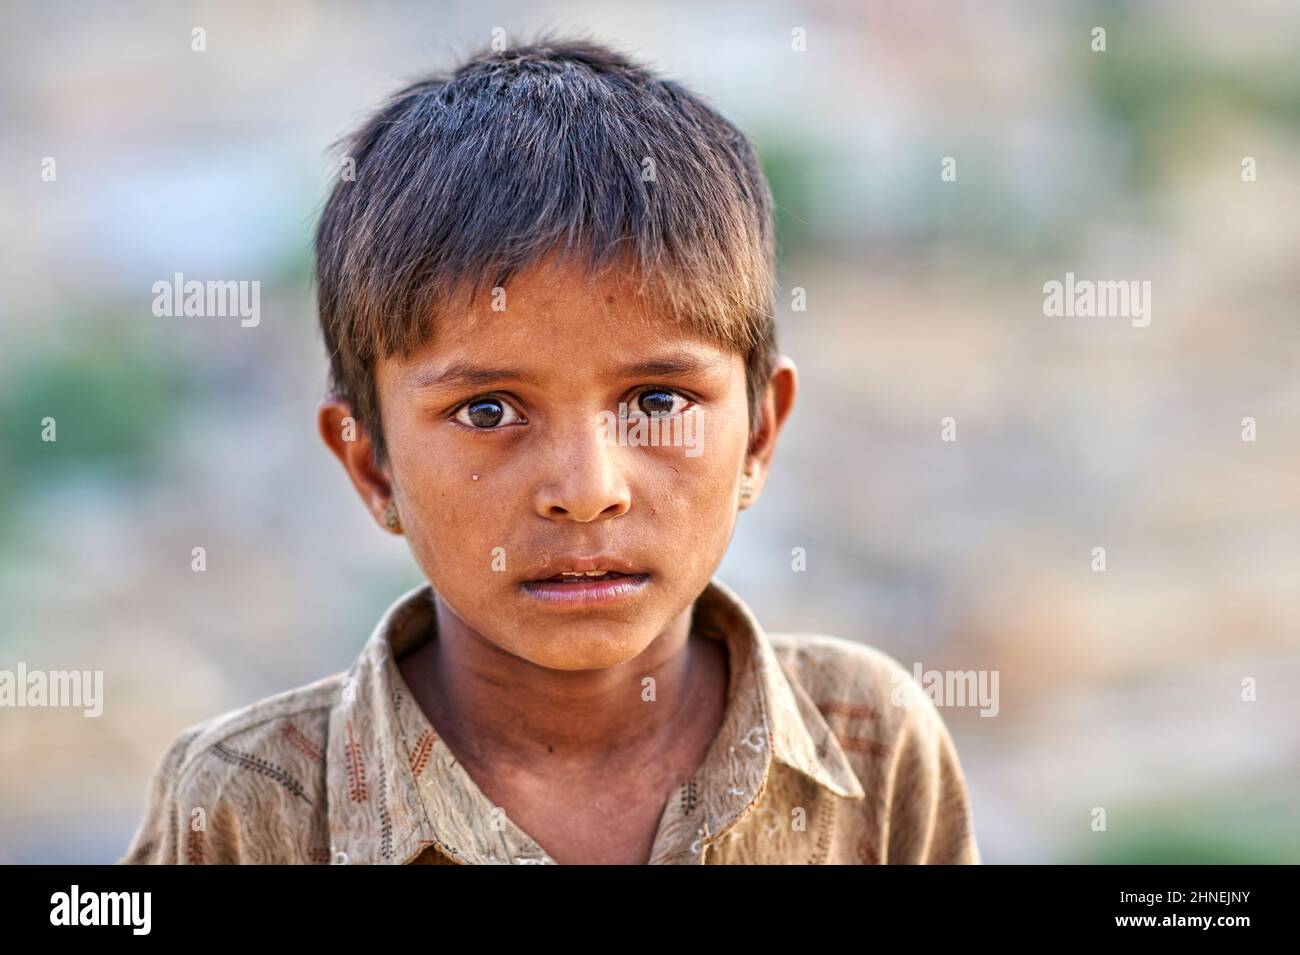 Inde Rajasthan jaisalmer. Portrait d'un garçon triste Banque D'Images